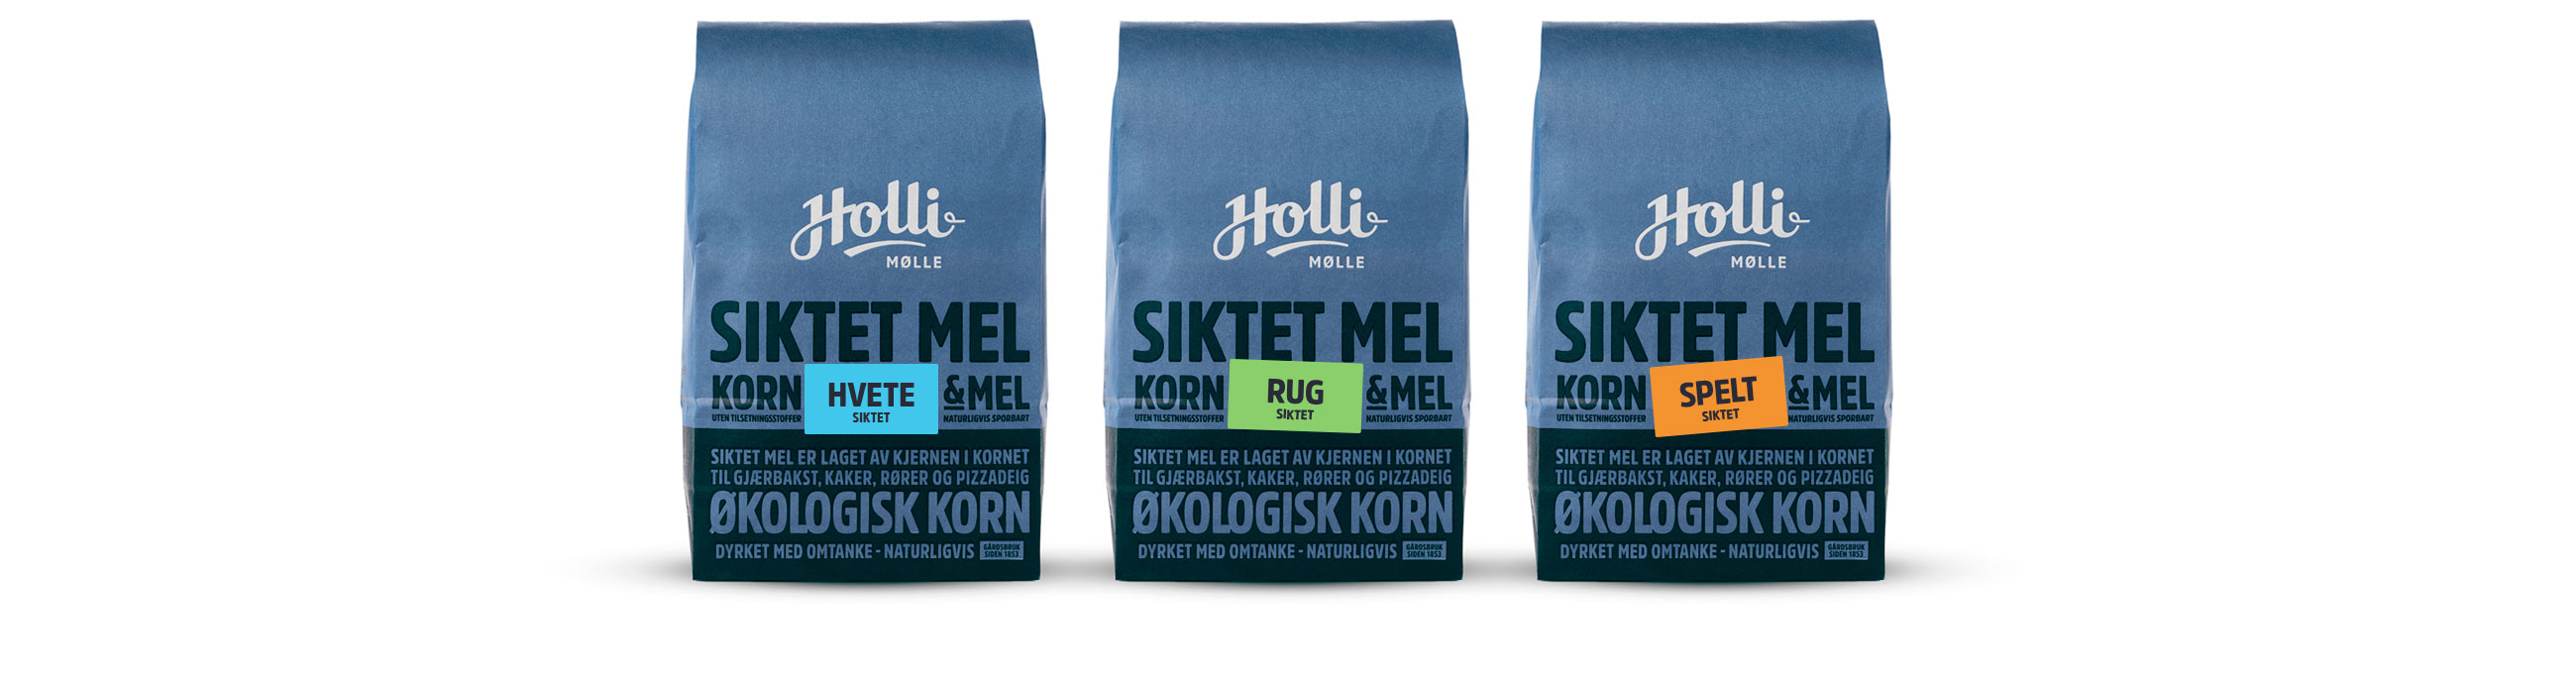 Holli Mølle Siktet mel, hvete, rug og spelt. Emballasje packaging design.